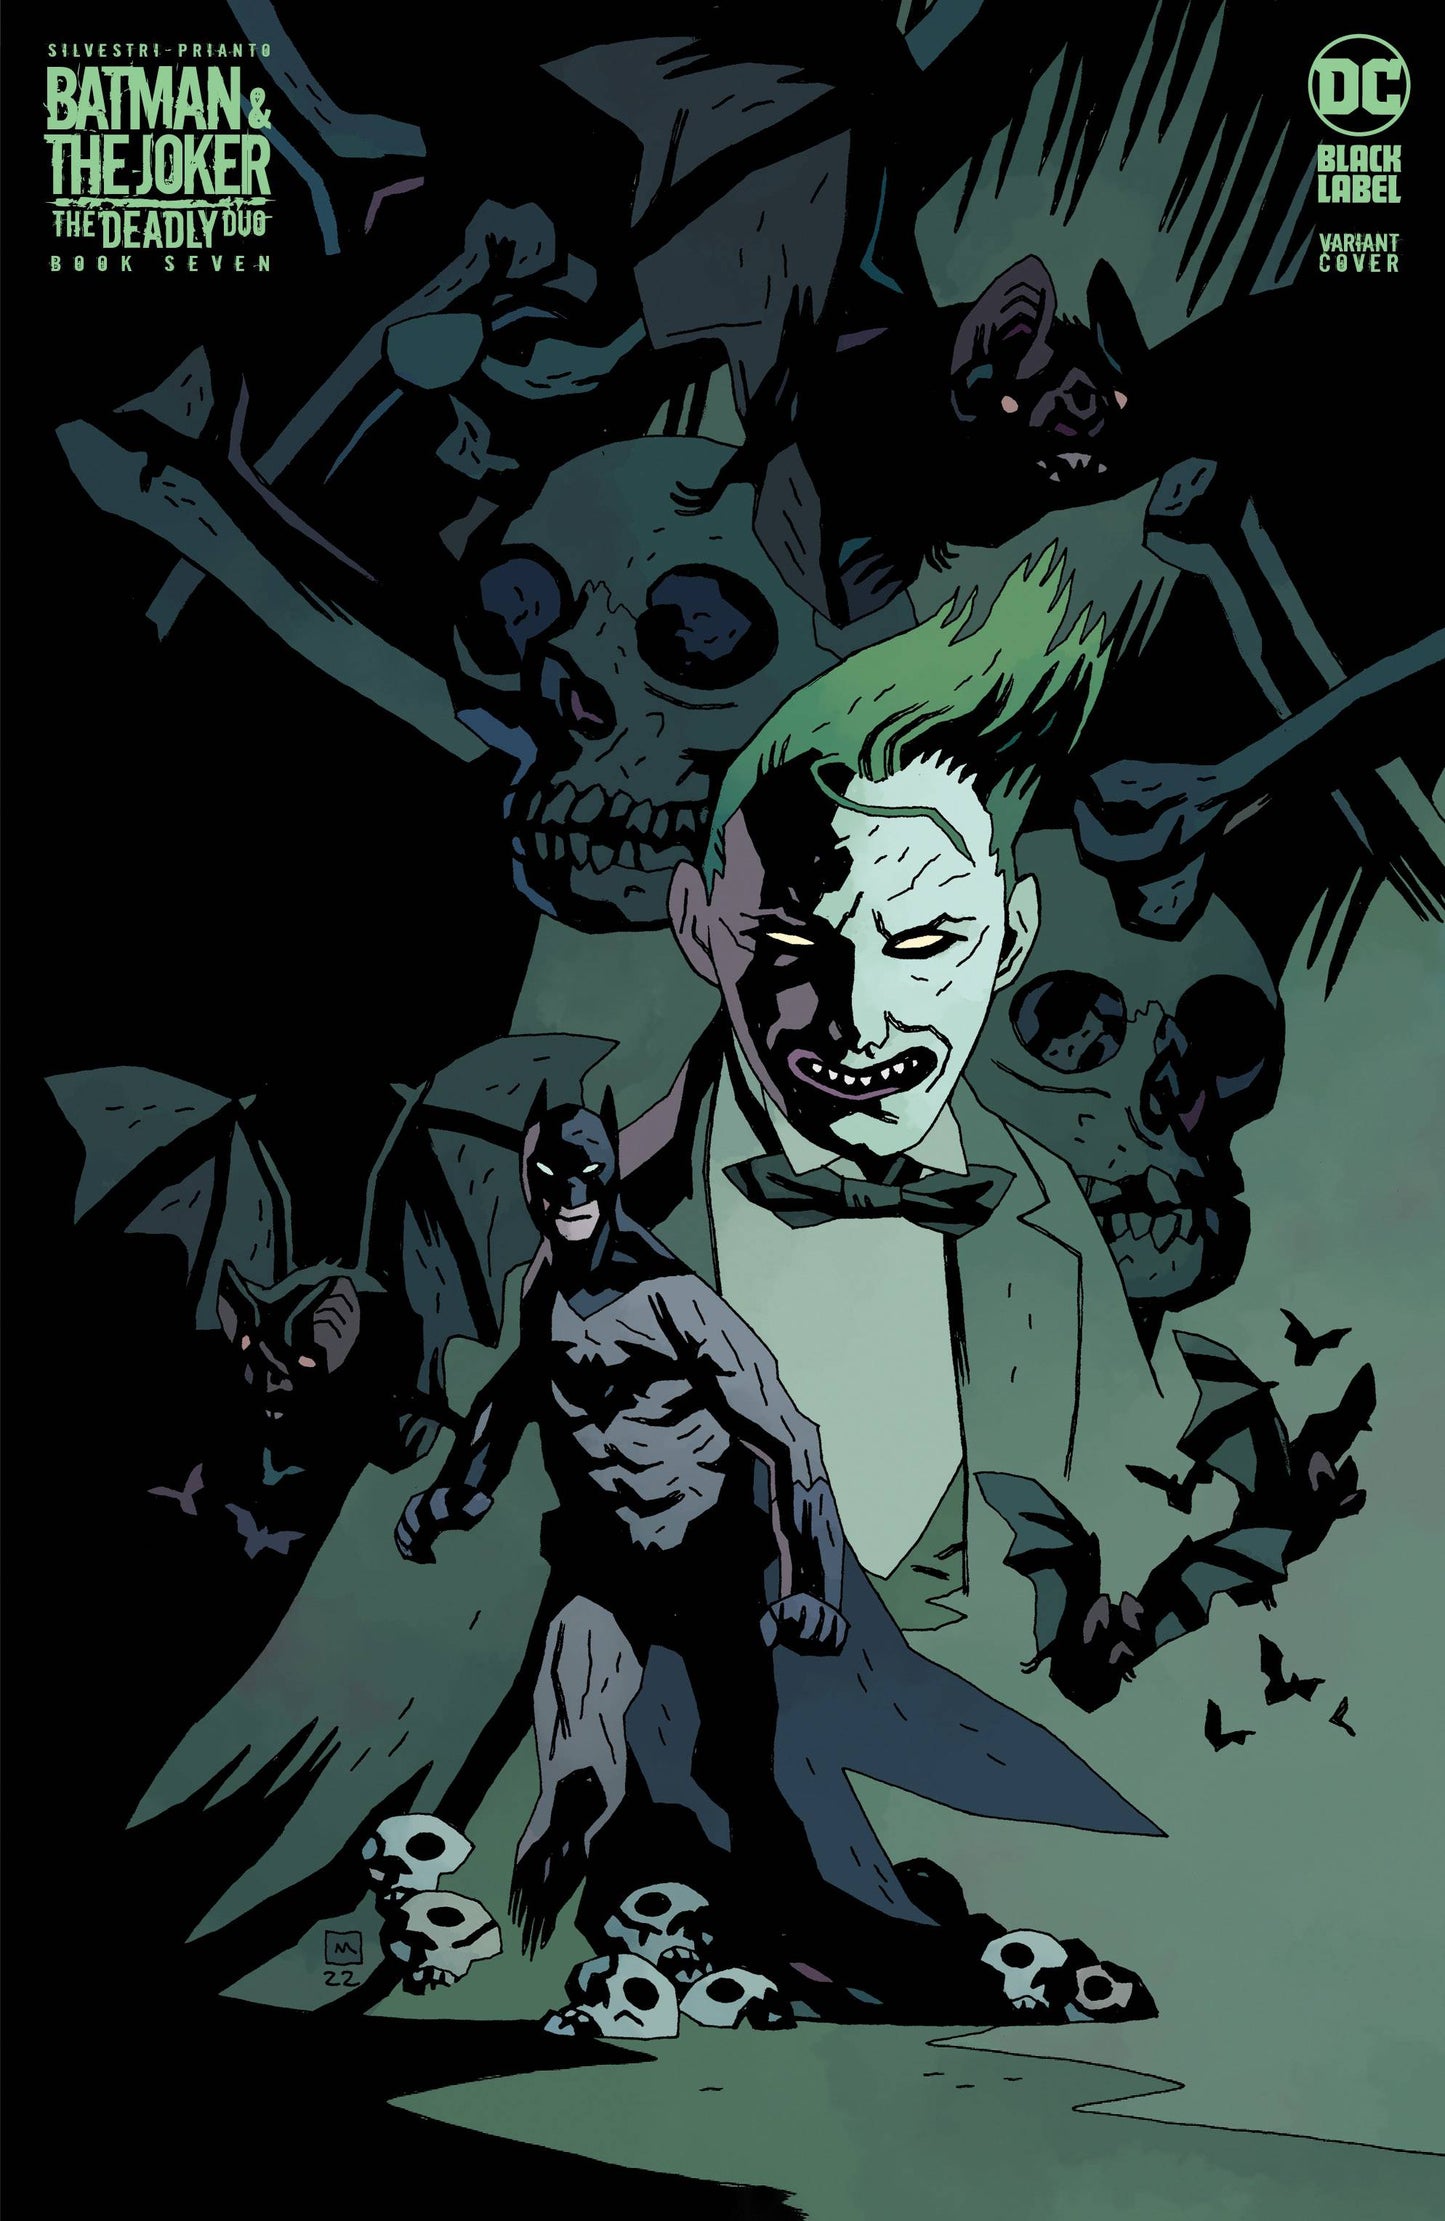 BATMAN JOKER DEADLY DUO #7 (OF 7)